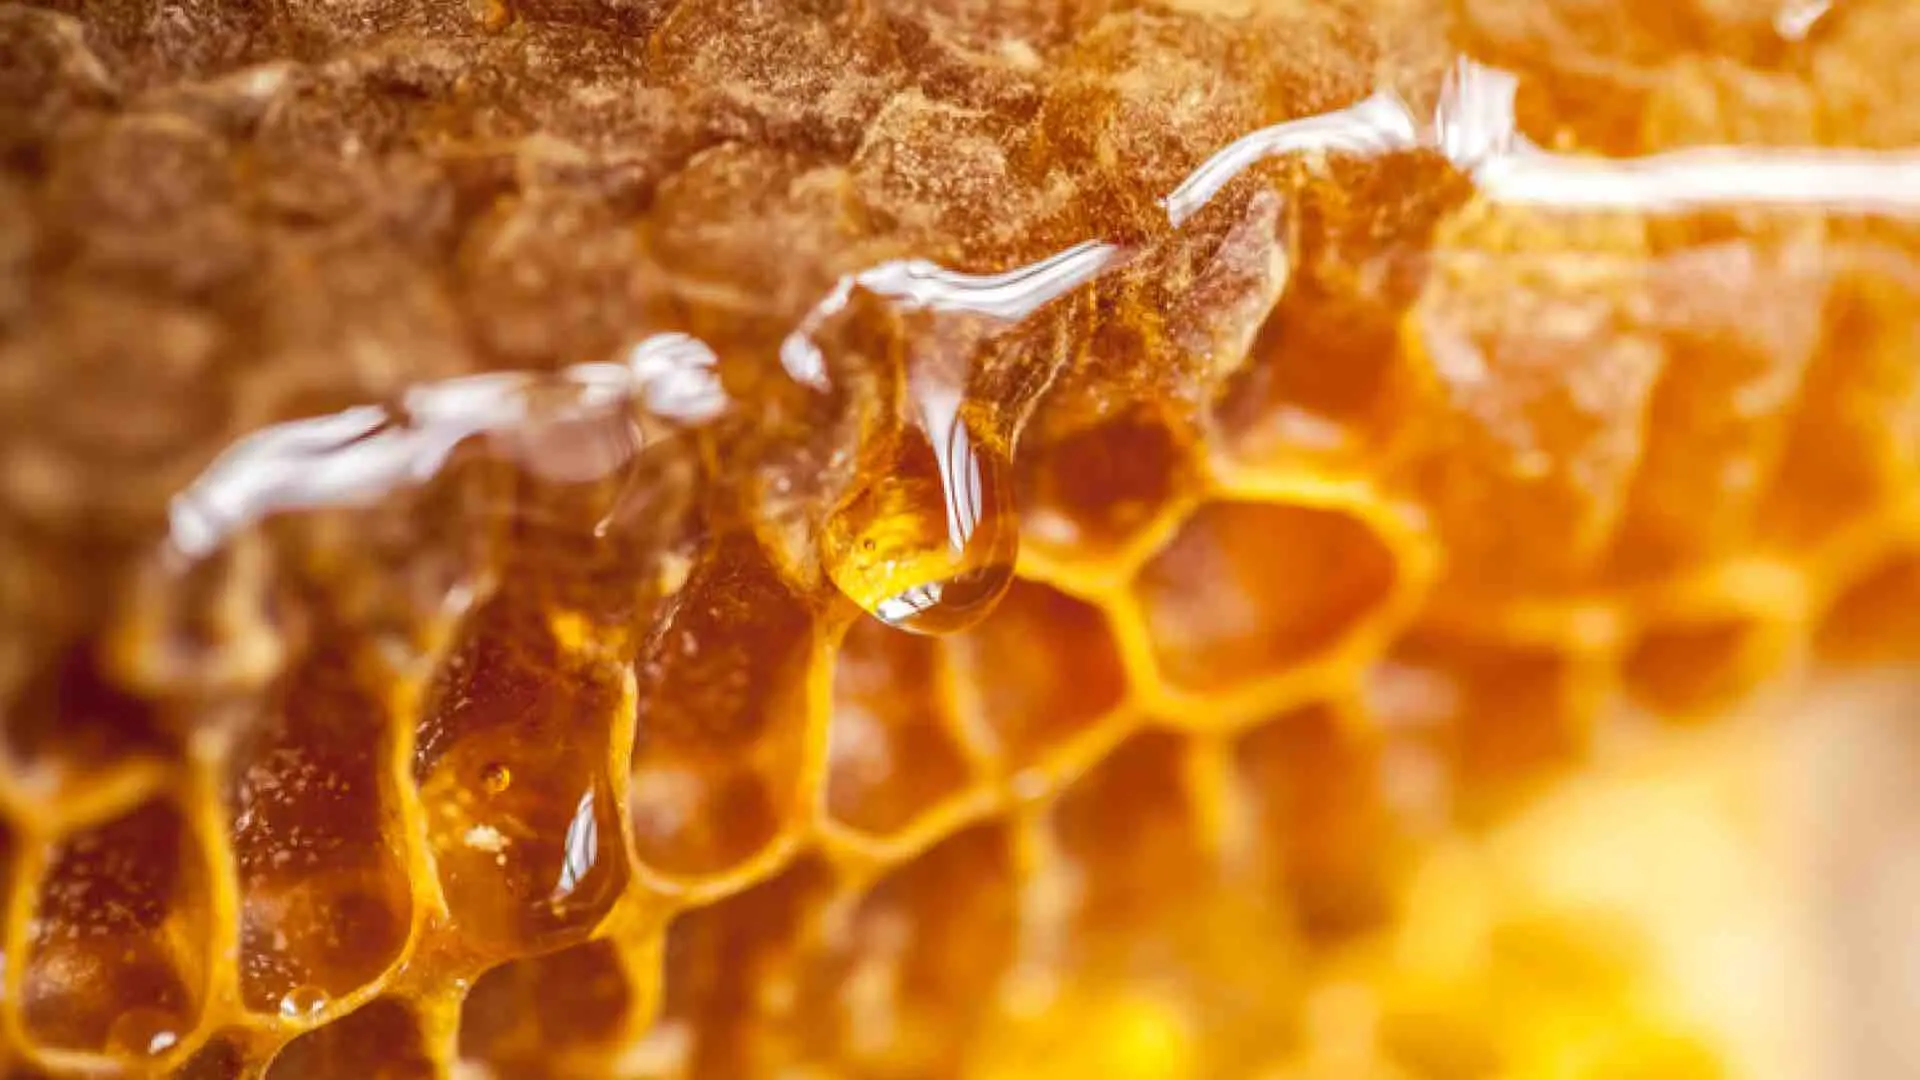 Frollatura in cera d'api, la svolta in cucina » Blog Deliveristo